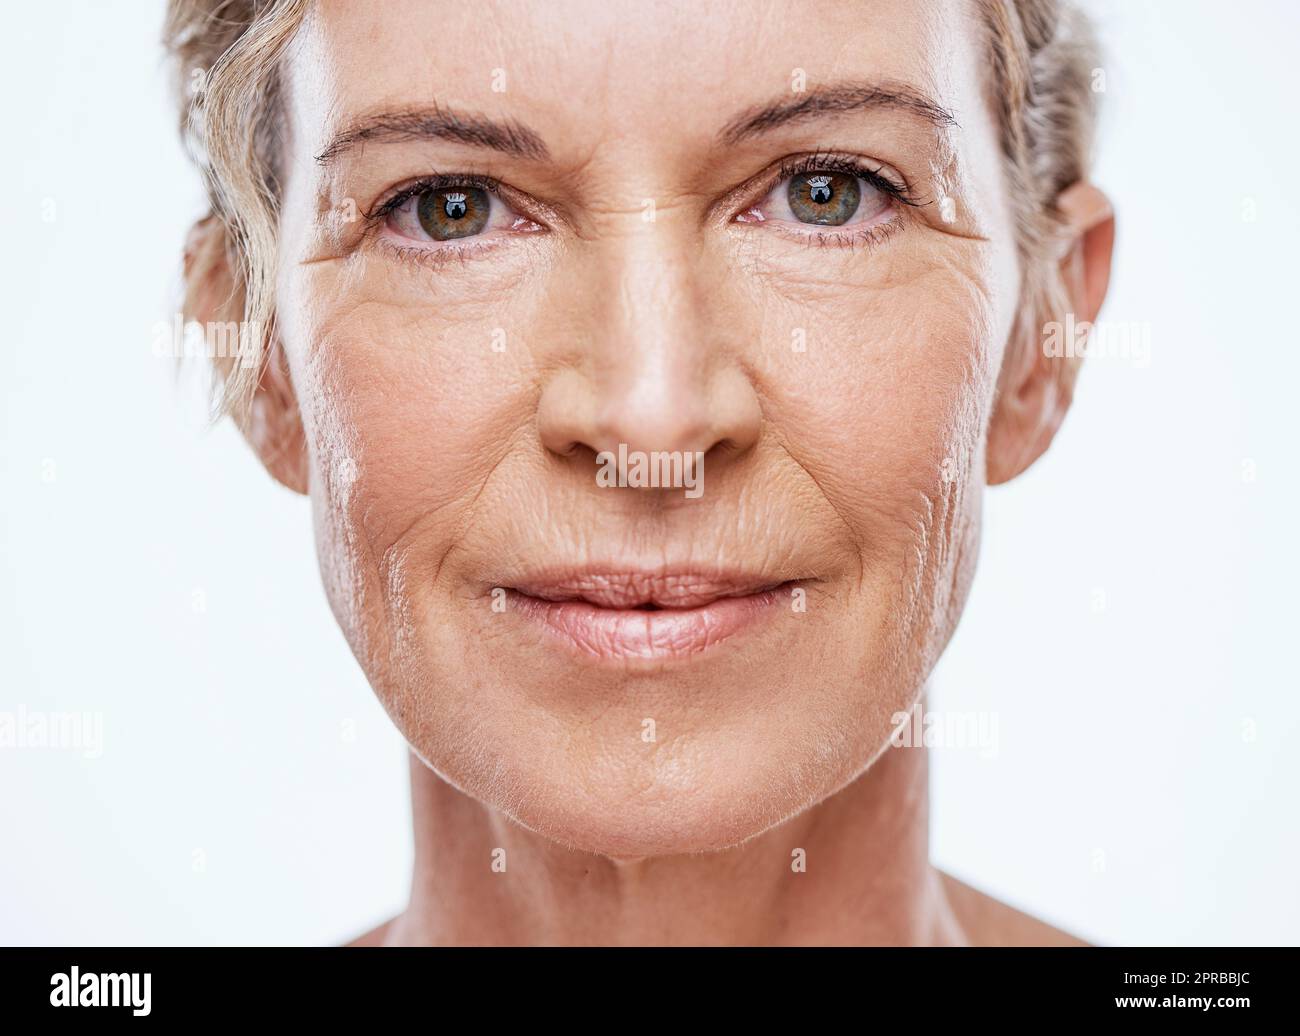 Unsere Haut altert mit zunehmendem Alter. Eine schöne reife Frau posiert vor weißem Hintergrund. Stockfoto